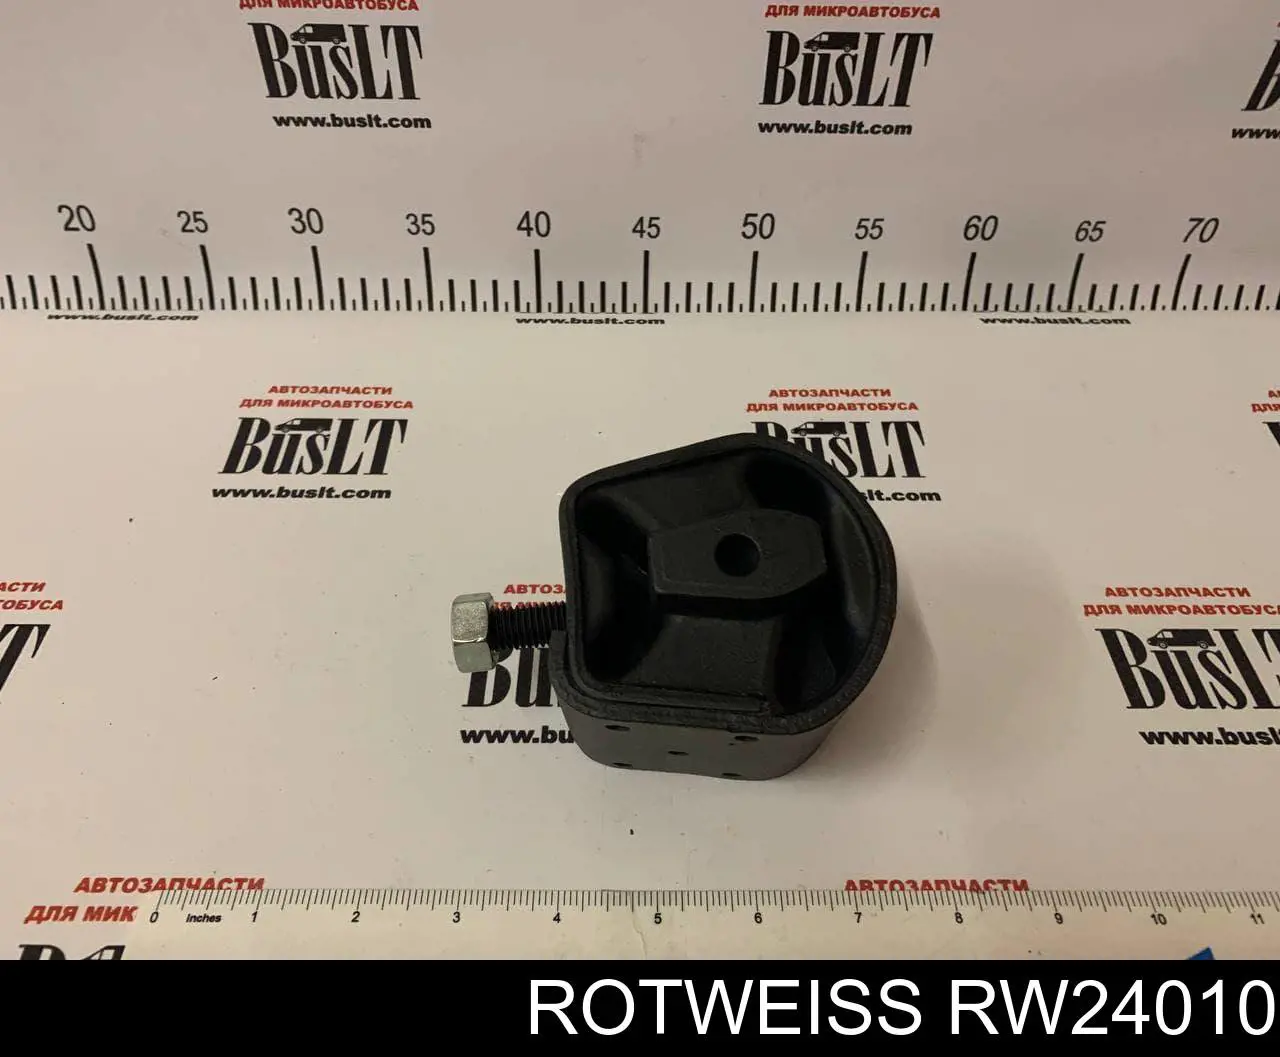 RW24010 Rotweiss coxim de transmissão (suporte da caixa de mudança)